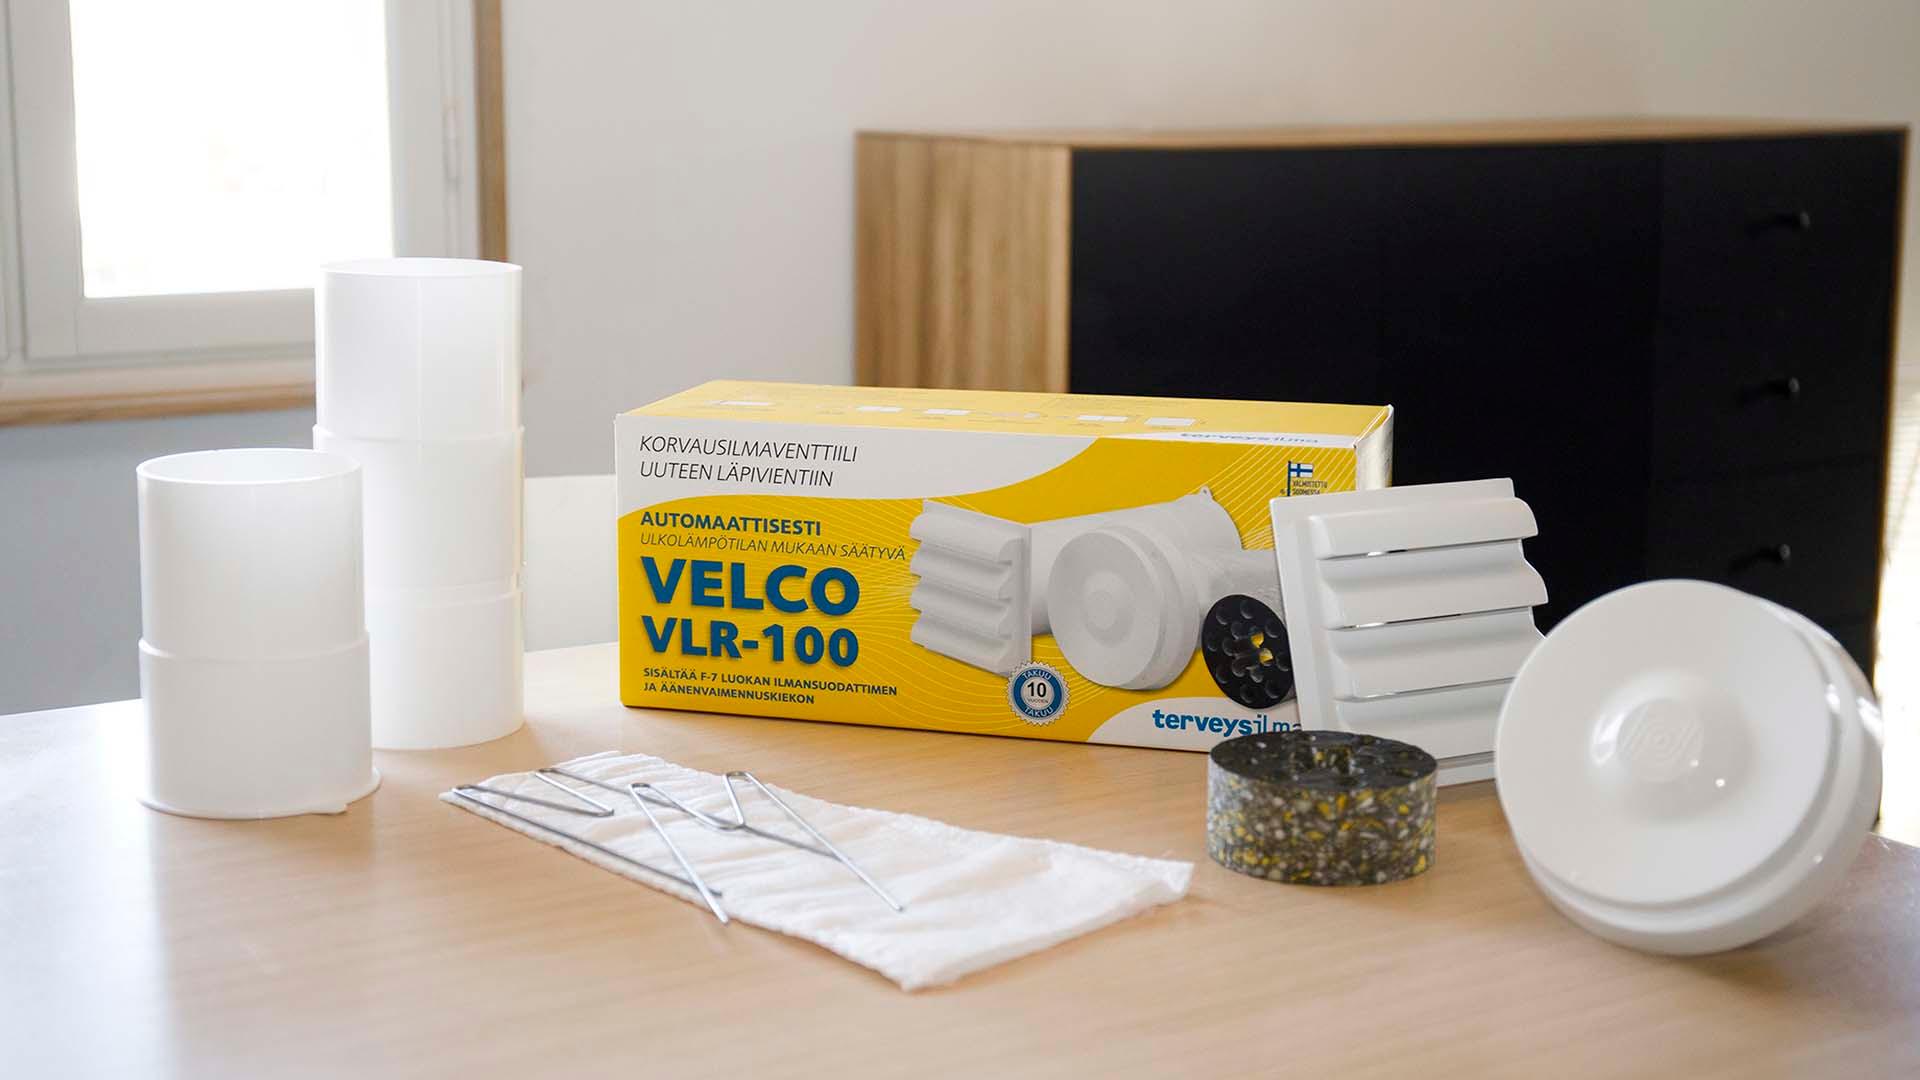 Velco VLR-100 korvausilmaventtiili on helppo ja nopea asentaa seinälle 105 mm rasiaterää käyttäen. Velco VLR-100 -tuotekokonaisuus sisältää termostaatilla varustetun Velco-korvausilmaventtiilin, tehokkaan suodattimen, ulkoritilän, äänenvaimennuskiekon sekä jatko- ja seinäputket.